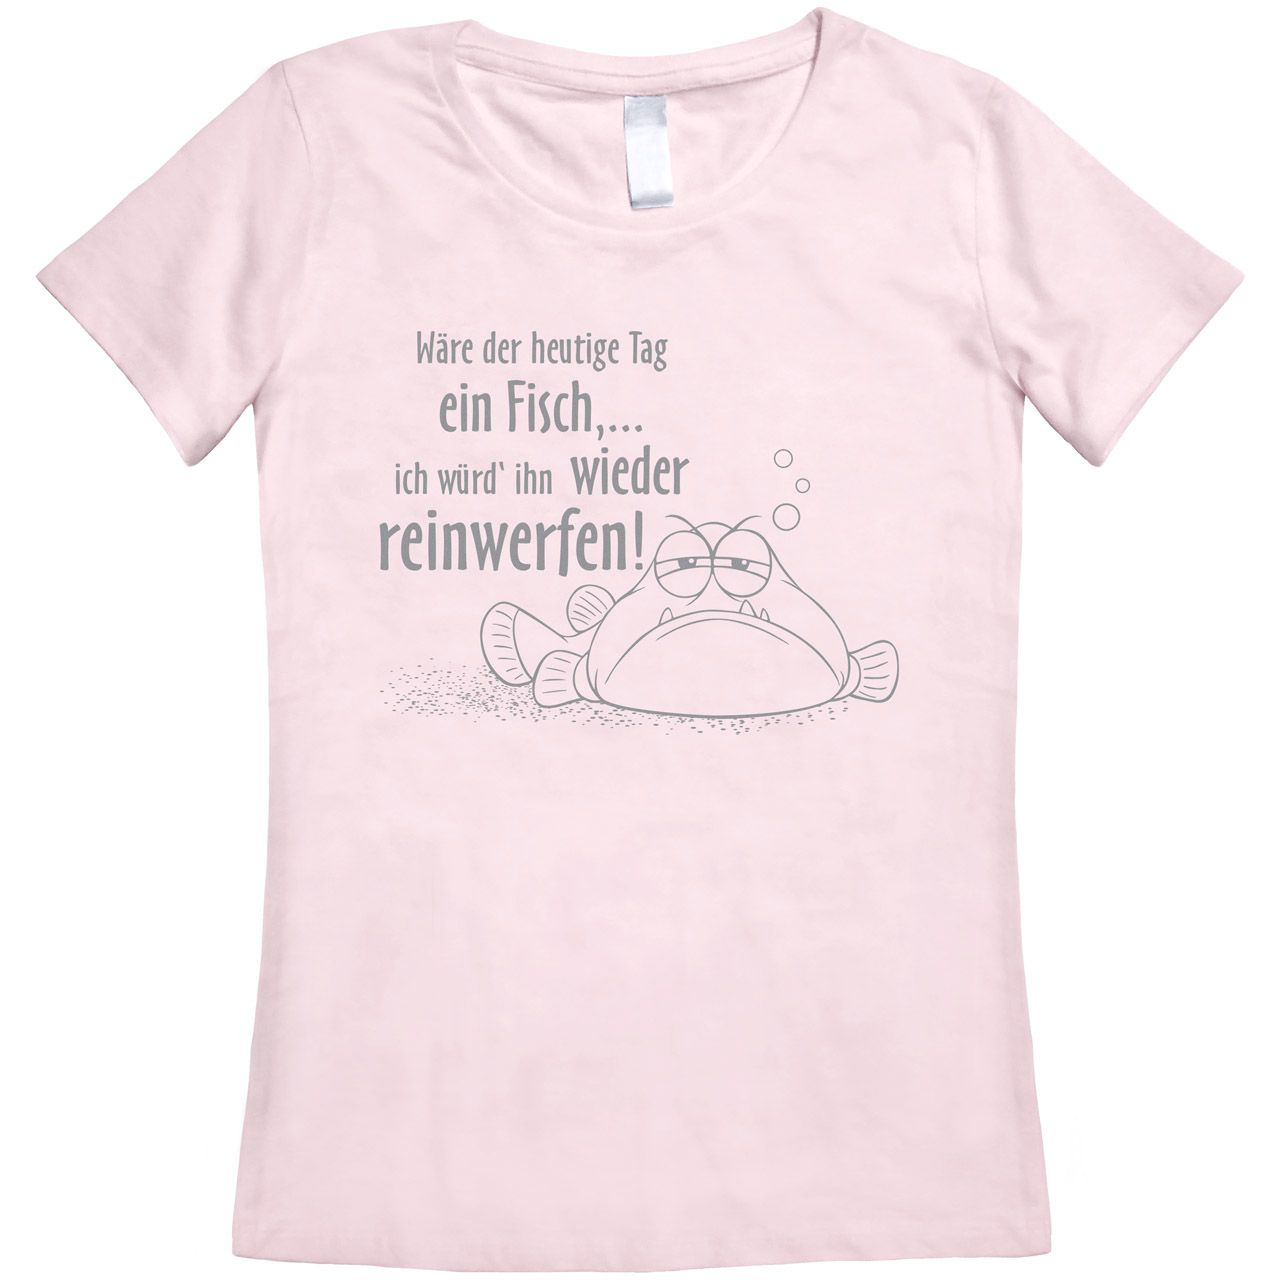 Wäre der heutige Tag ein Fisch Woman T-Shirt rosa Medium